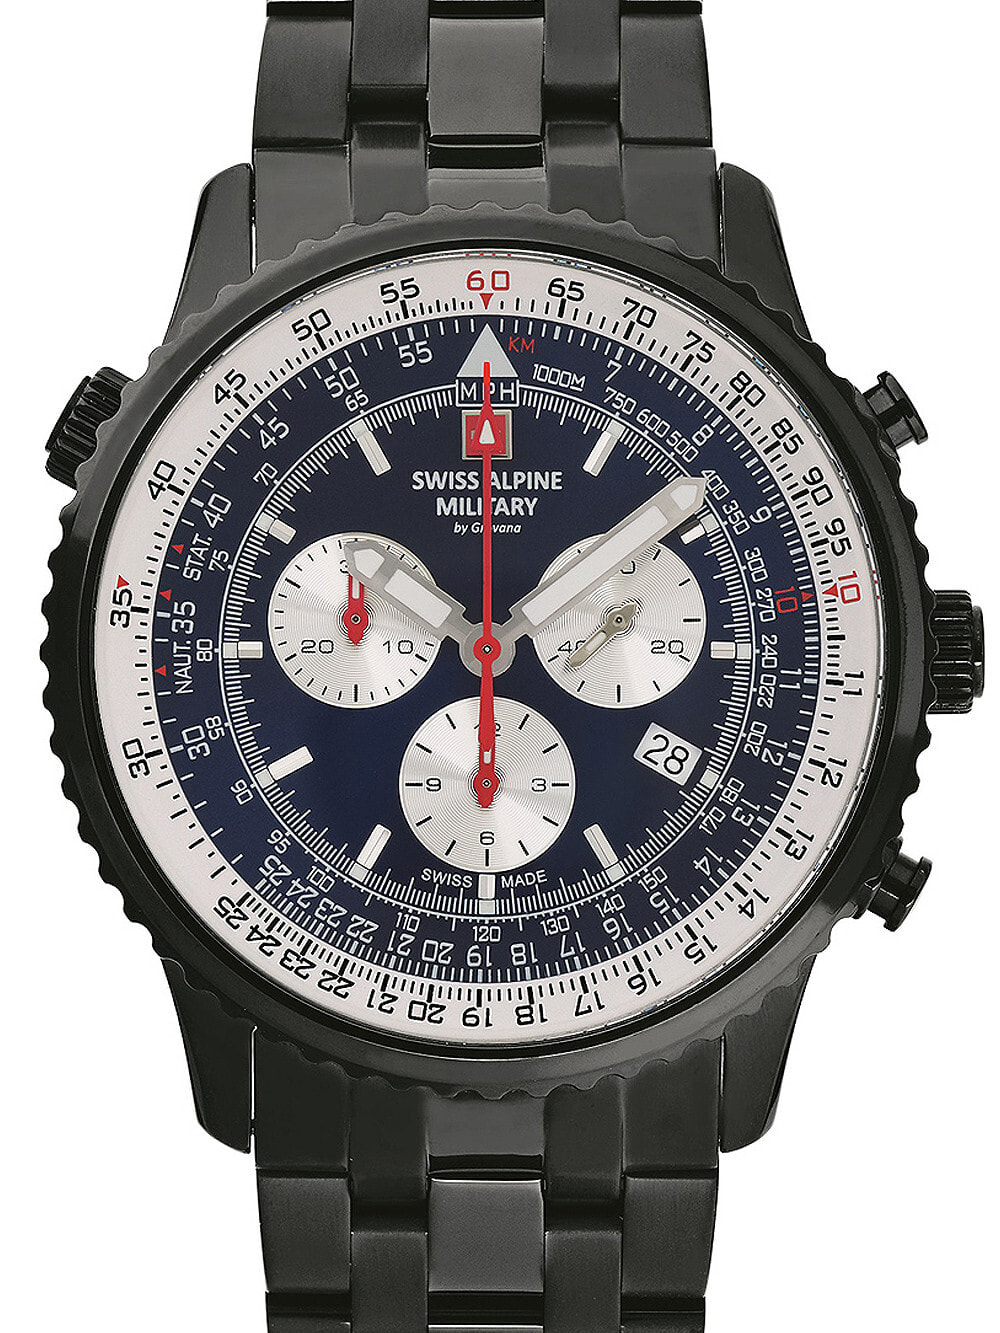 Мужские наручные часы с черным браслетом Swiss Alpine Military 7078.9175 chrono mens 45mm 10ATM